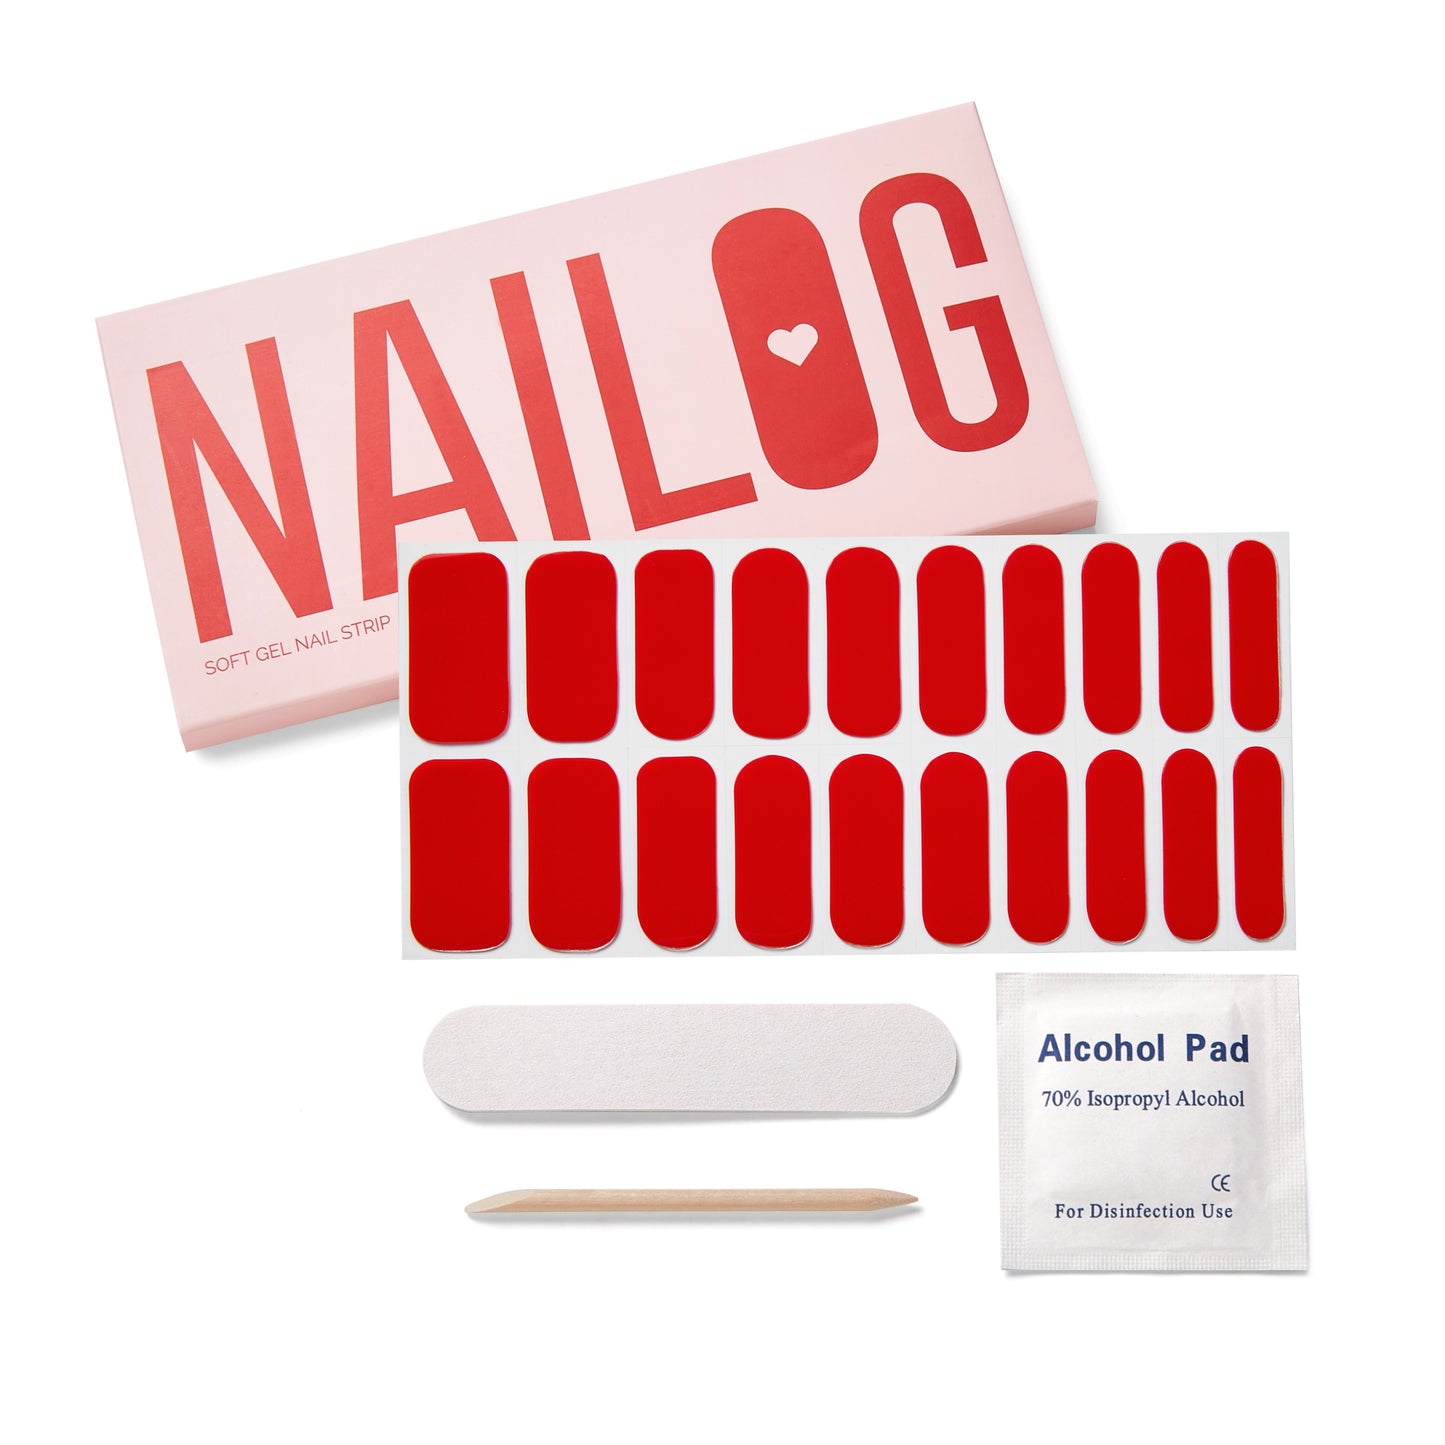 NAILOG semi-cured nail strip 001 Rouge. Ultra glossy & long-lasting nail sticker. Vegan & Cruelty-Free nail wrap.